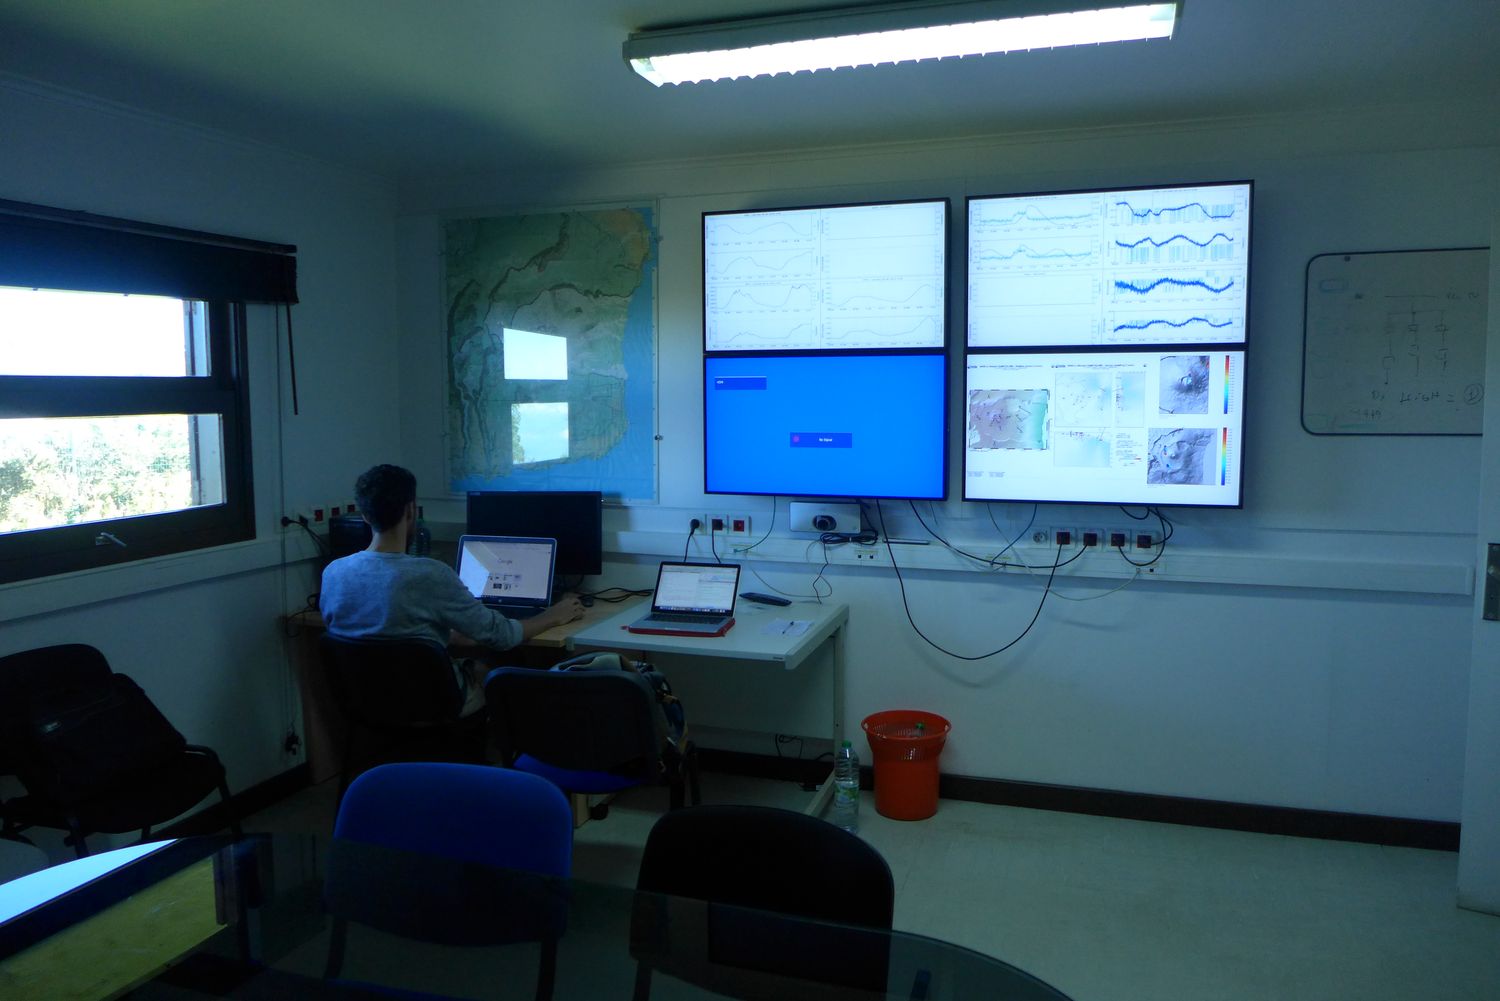 Le rôle des scientifiques est de surveiller l’activité sismique afin de prévoir la venue d’une nouvelle éruption du Piton de la Fournaise.